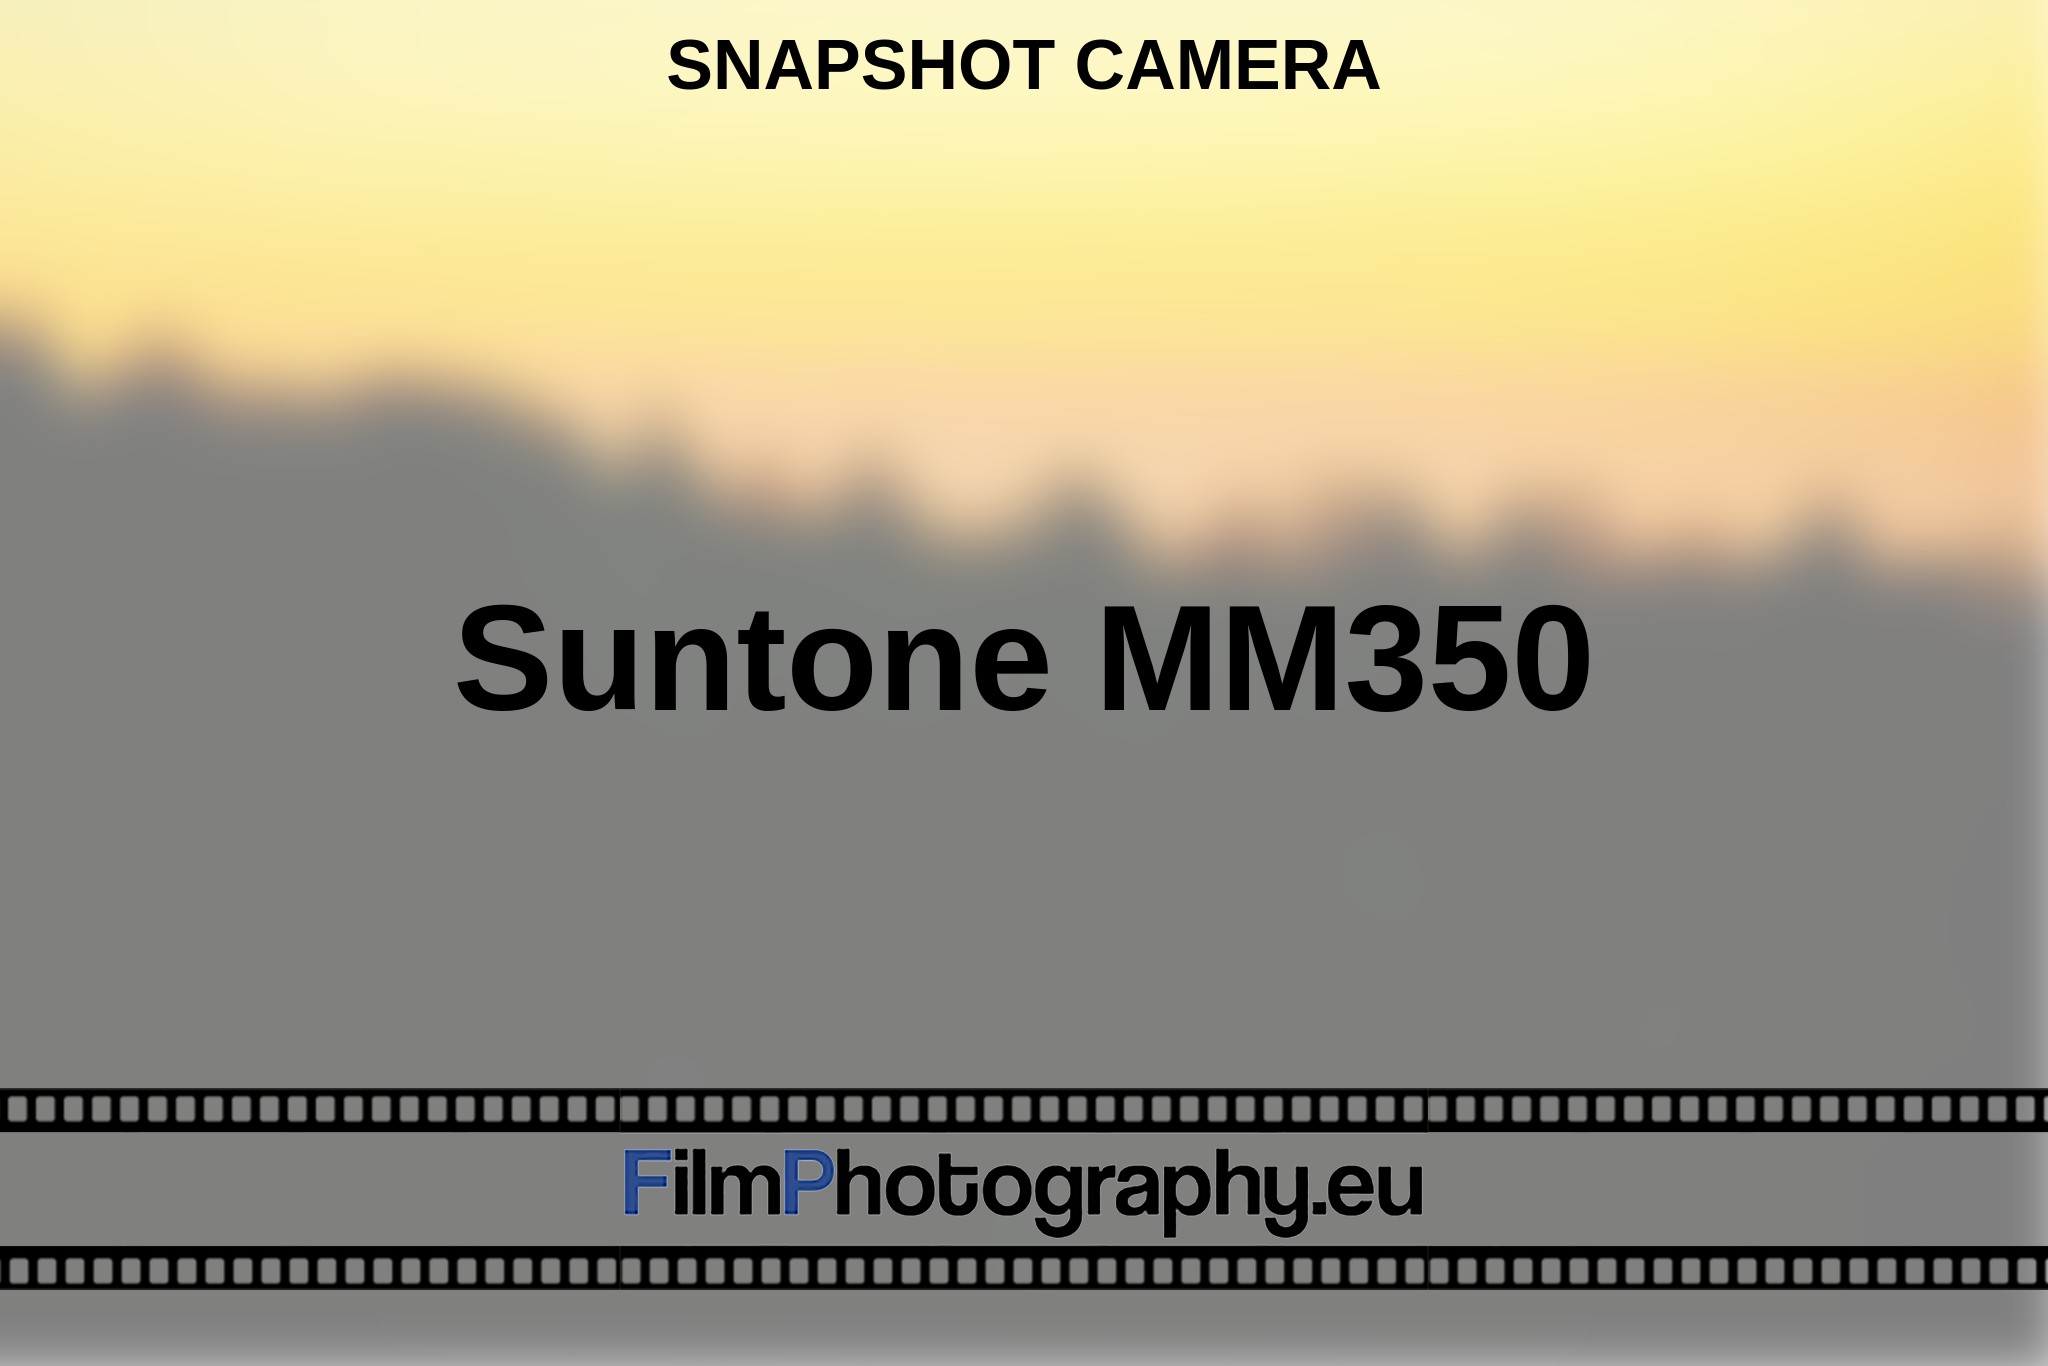 suntone-mm350-snapshot-camera-en-bnv.jpg